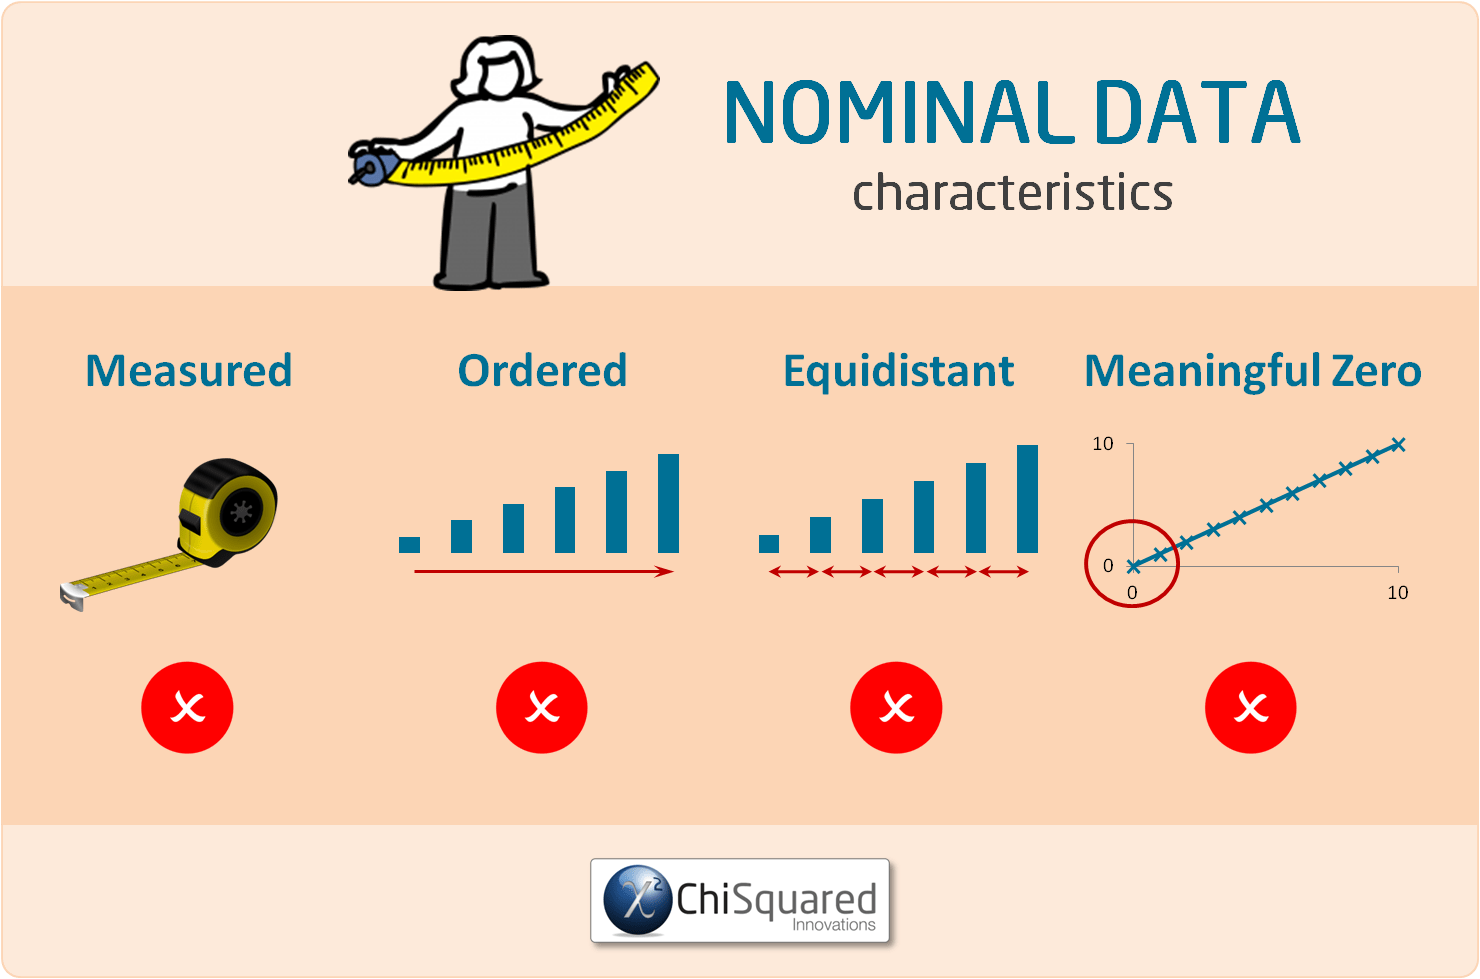 Nominal data